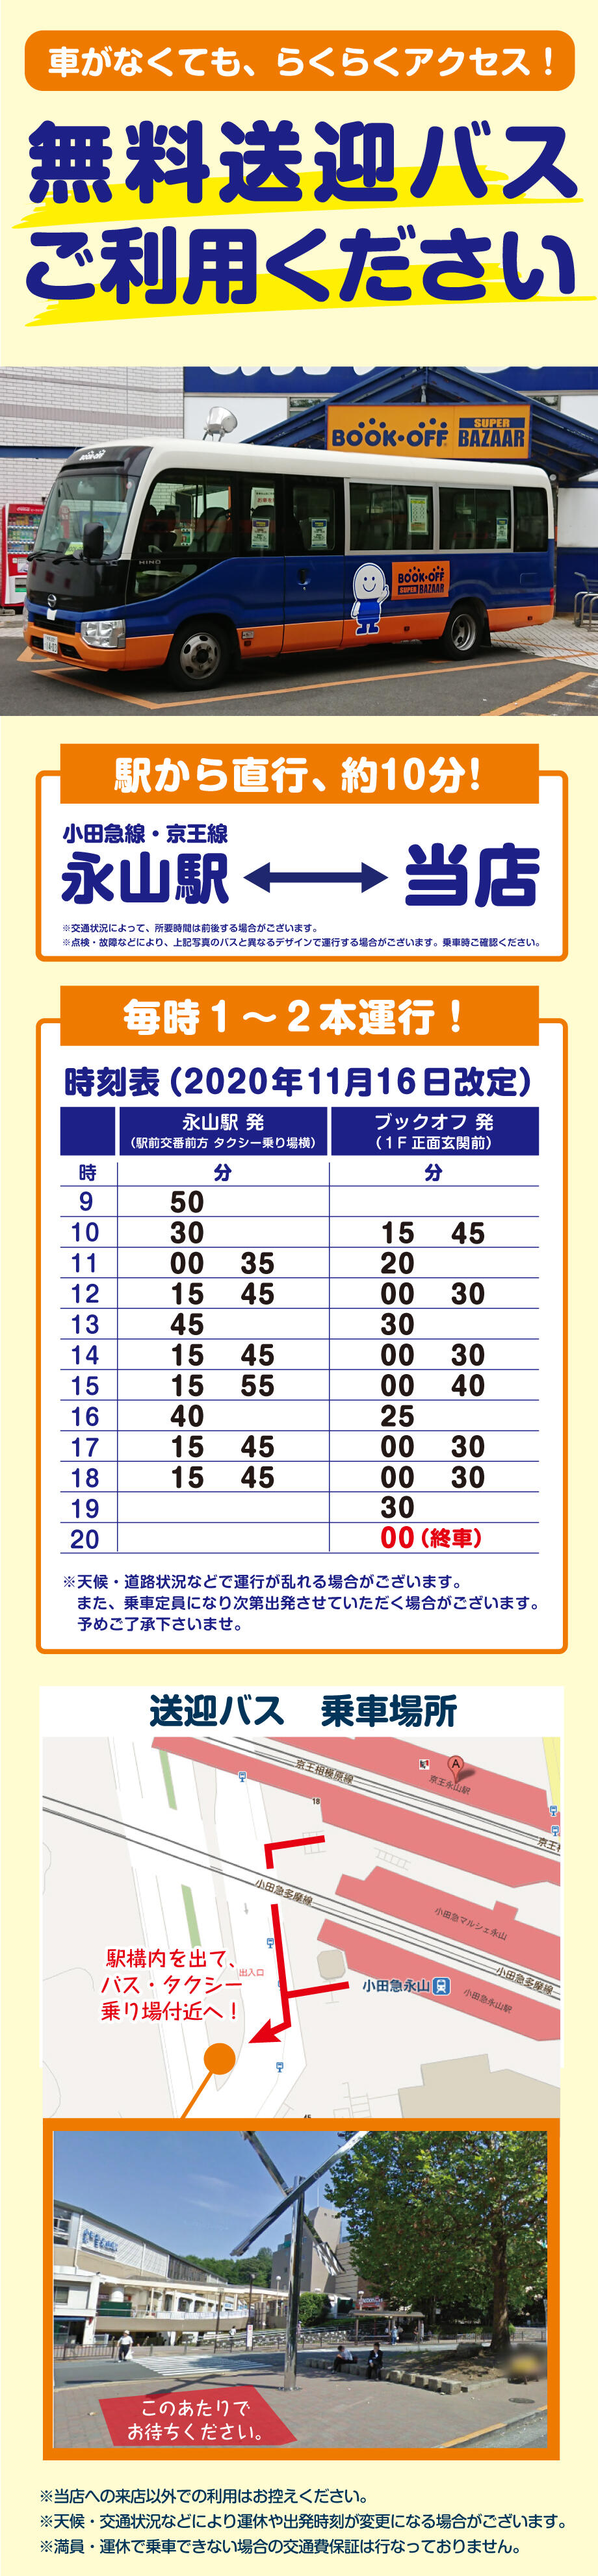 BOOKOFF SUPER BAZAAR 多摩永山店 シャトルバス時刻表